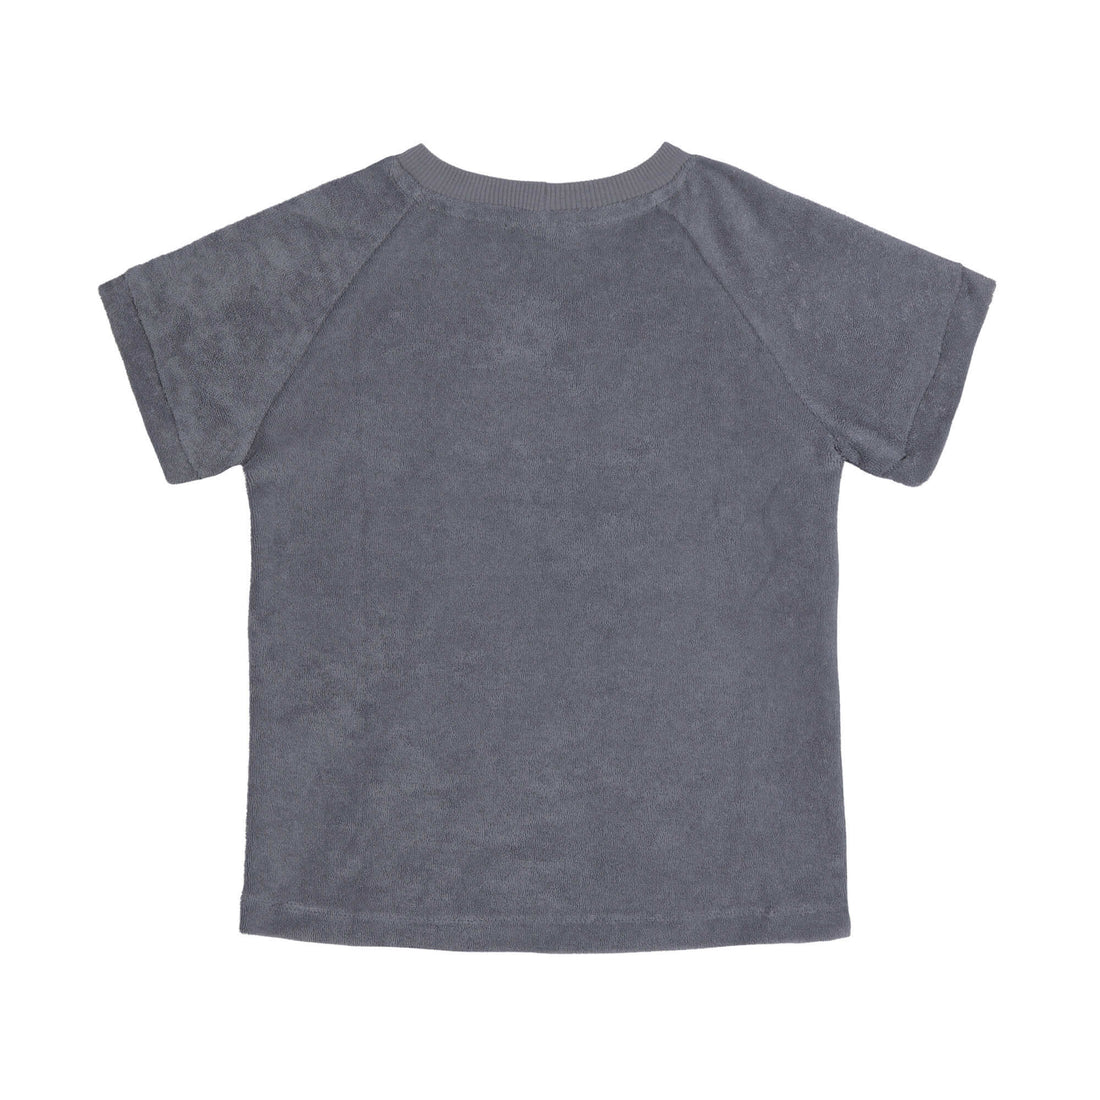 Lässig - Bequemes Frottee T-Shirt dunkelgrau